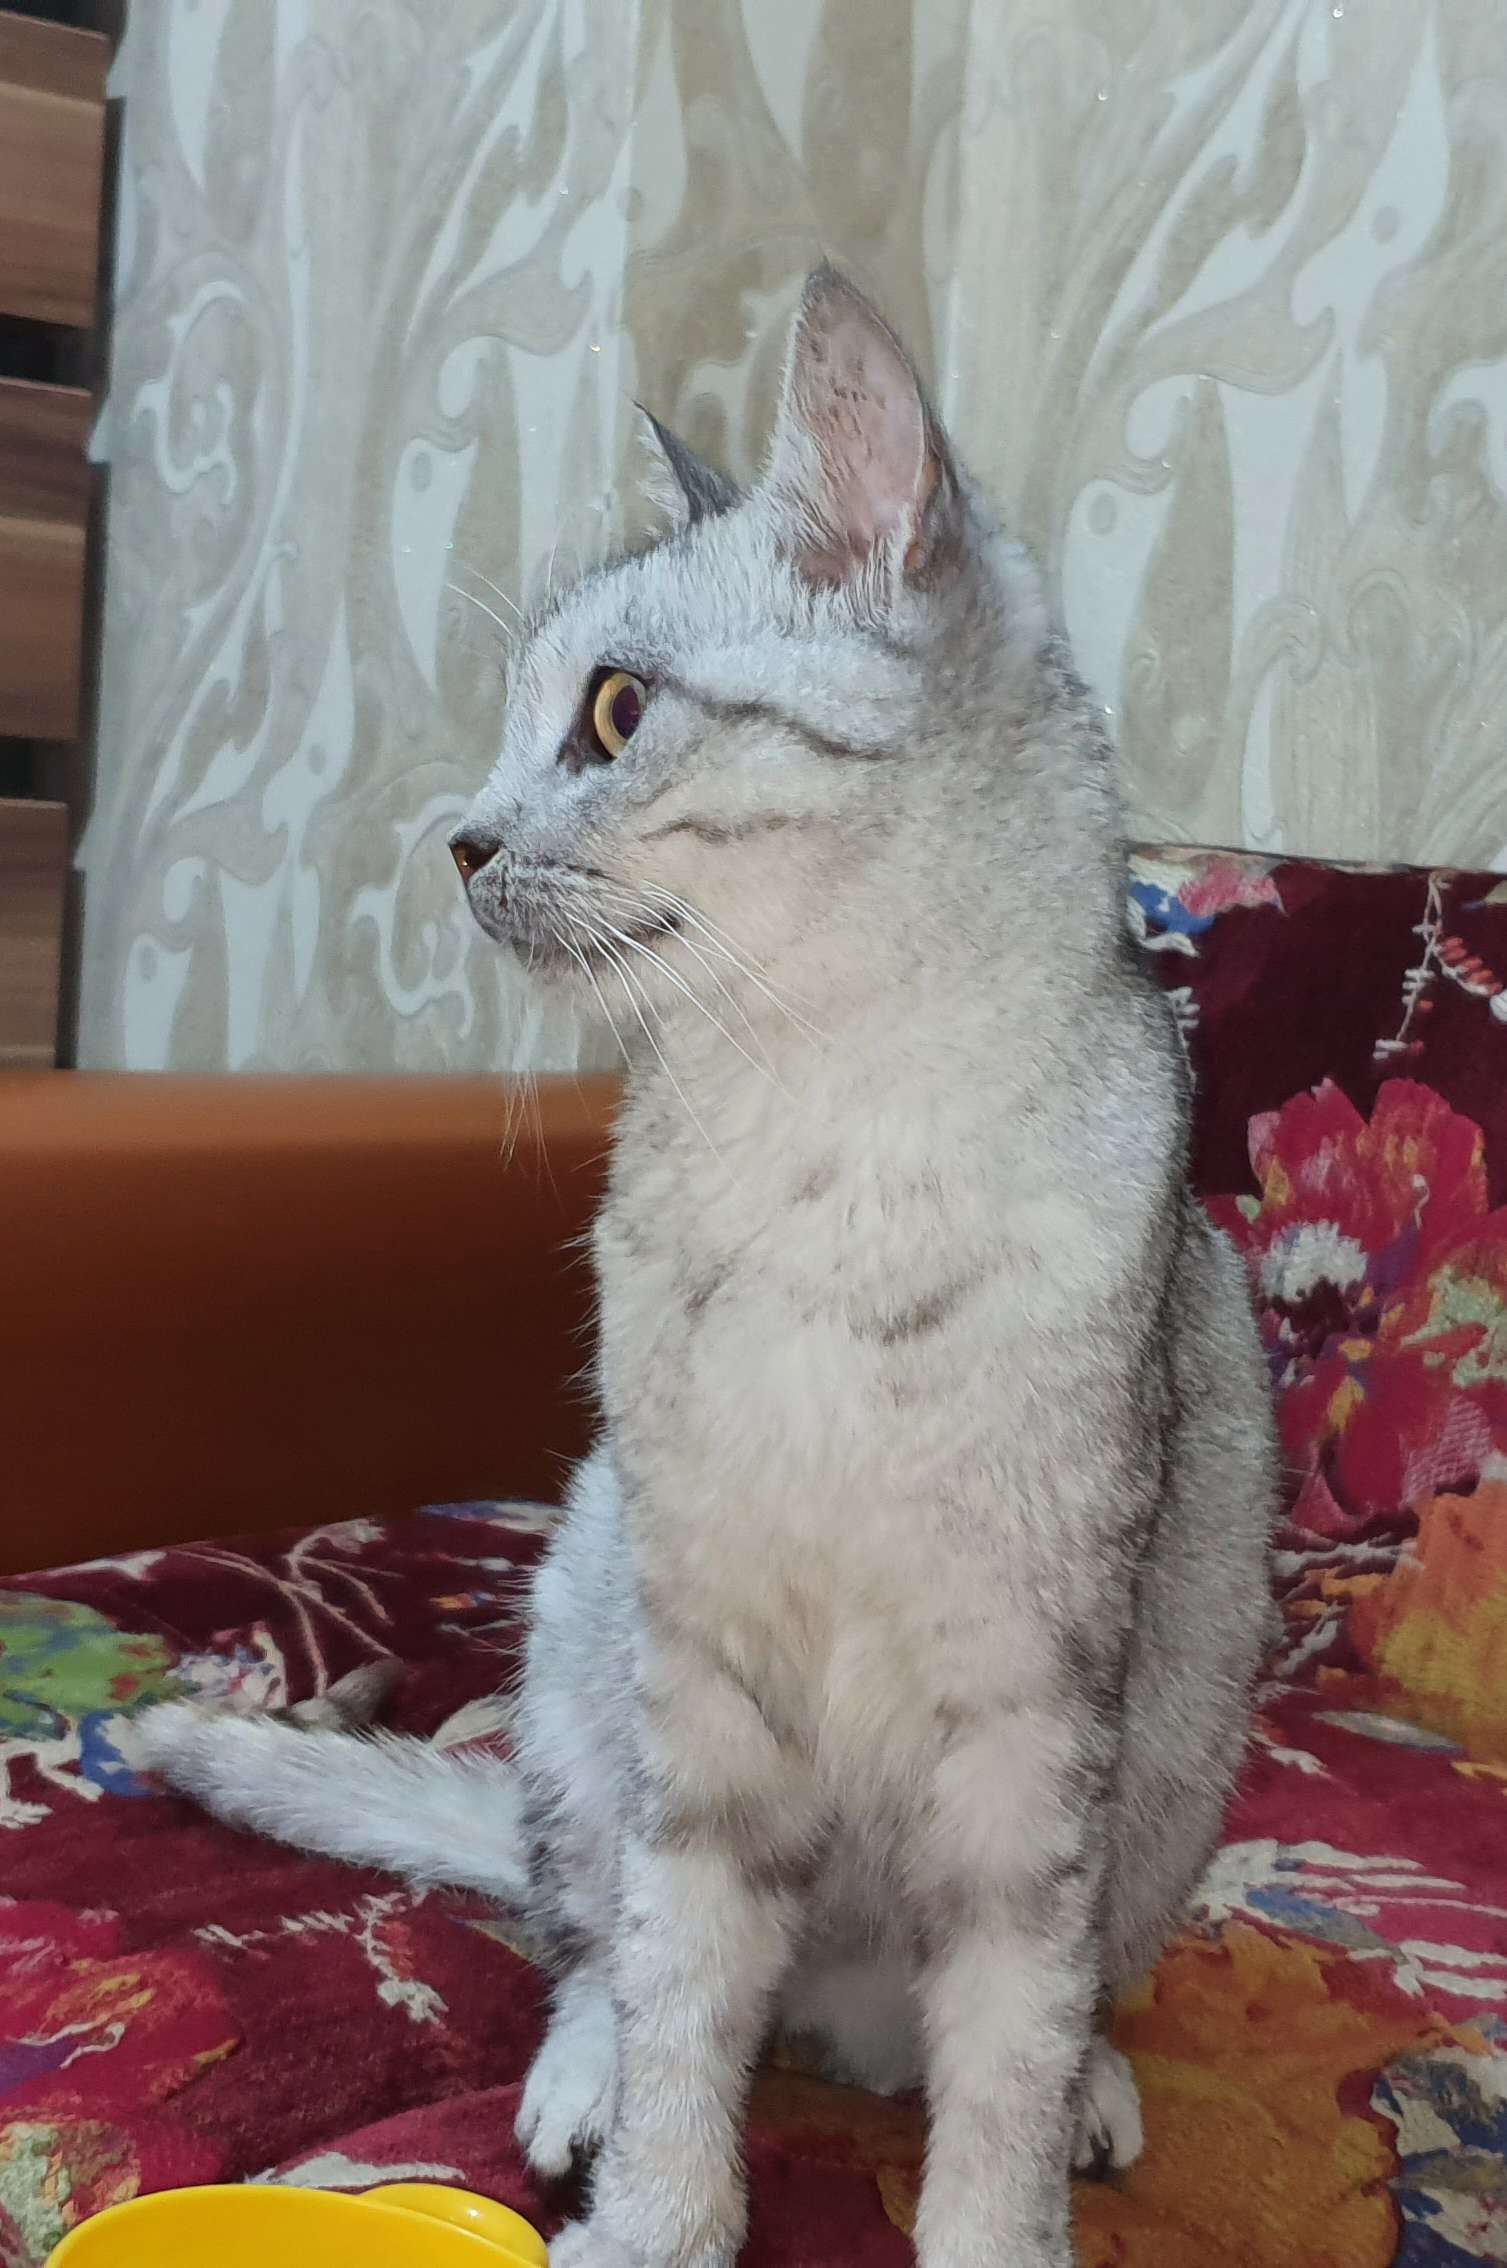 Gebze Ballikayalar Tabiat Parkına yakın ormanda bulunan cins gri kedi